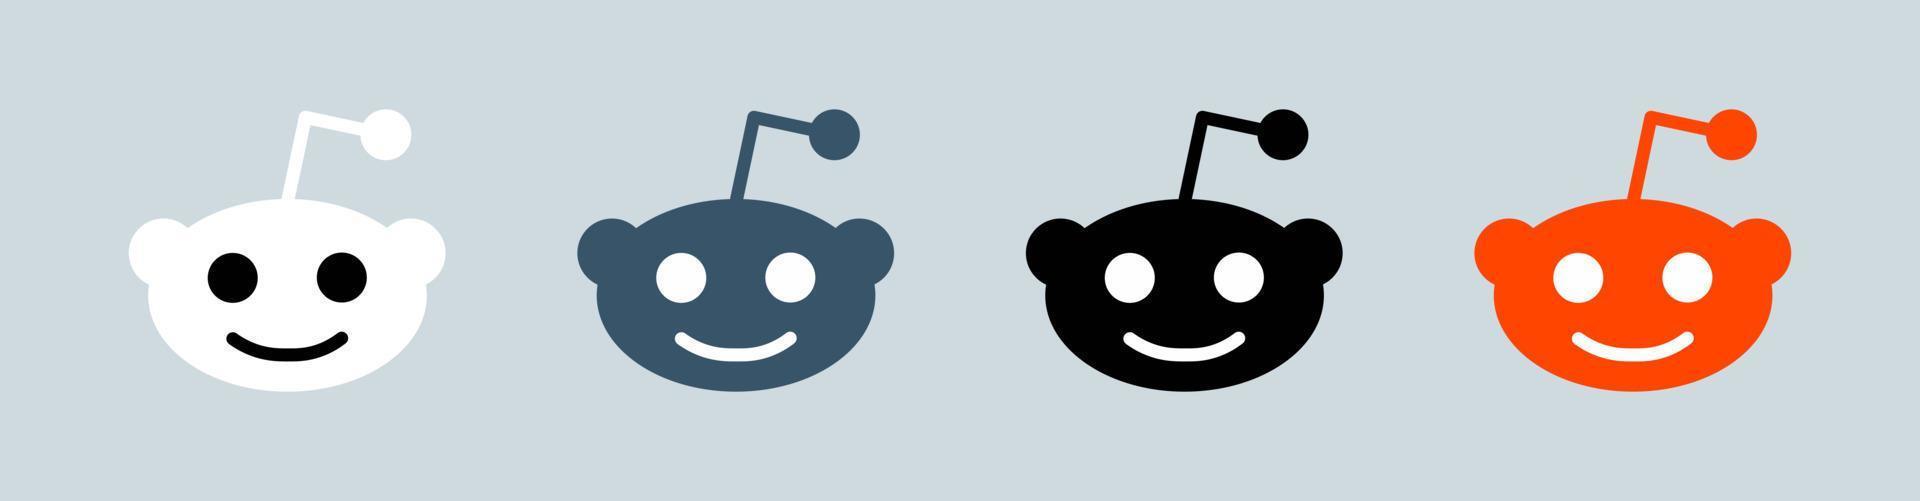 Reddit logo collection. Popular social media logotype vector illustration.